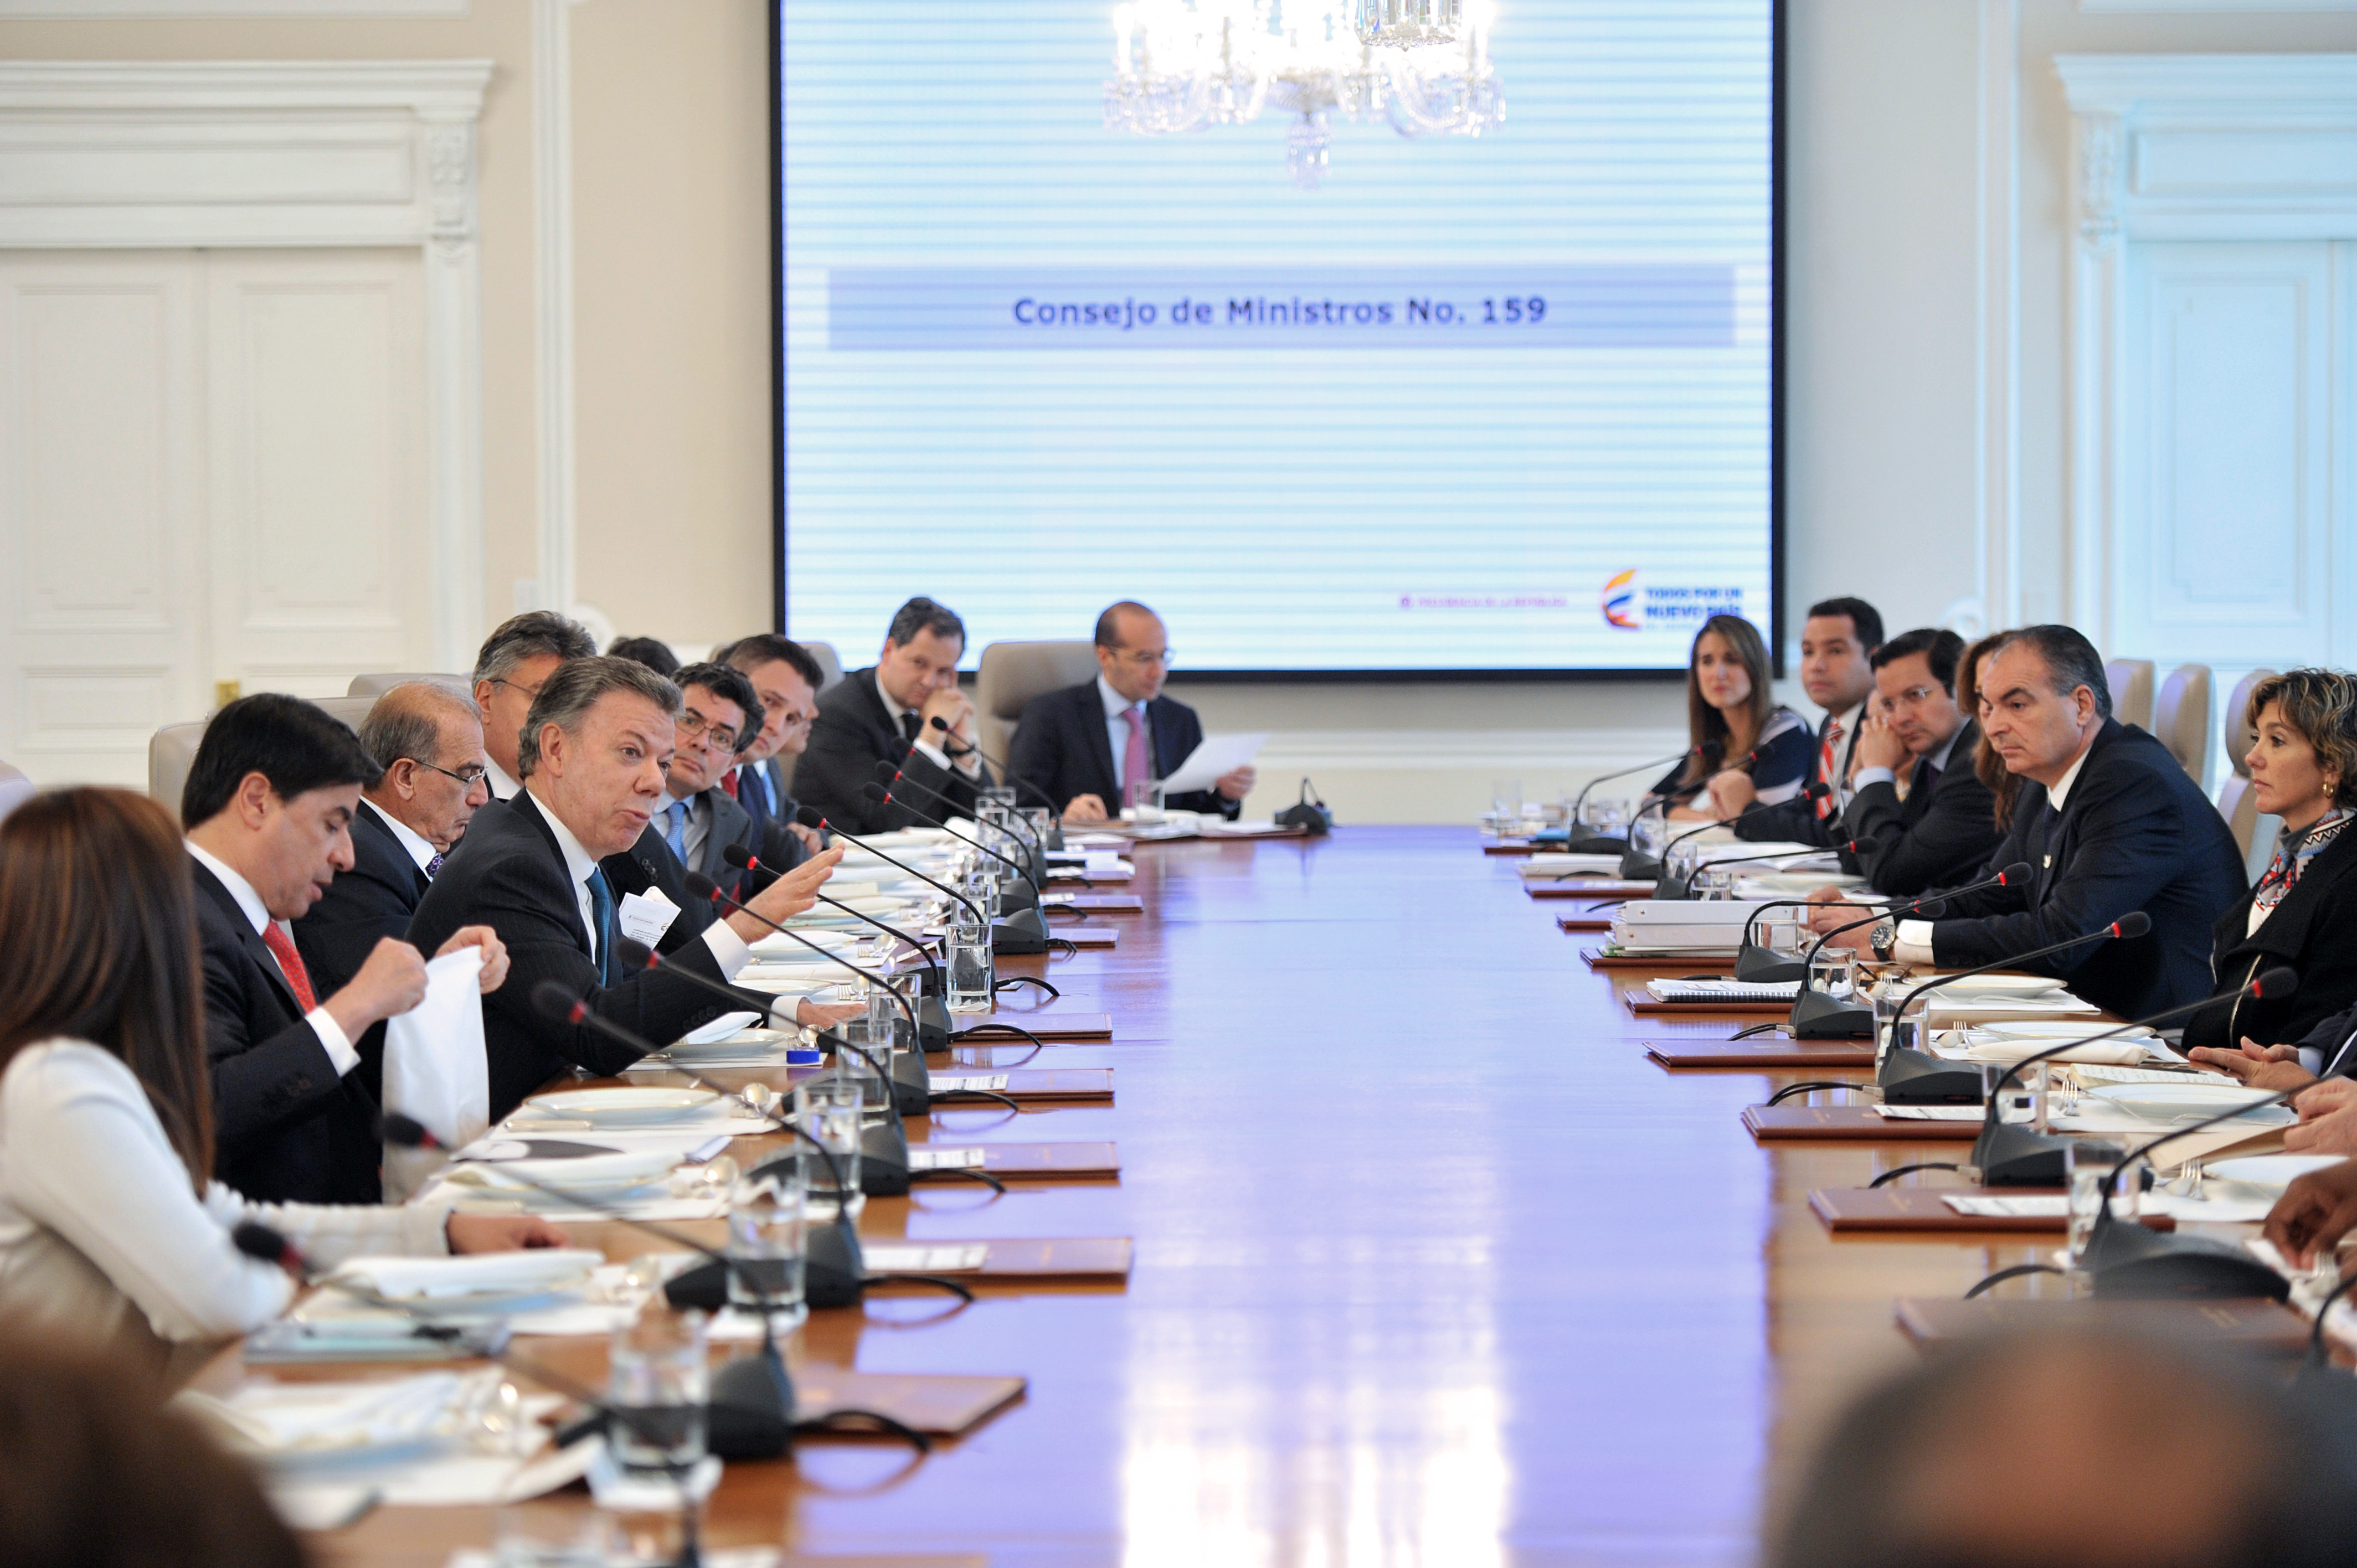 El Presidente Juan Manuel Santos lideró el Consejo de Ministros, al que asistió la Viceministra Patti Londoño. En la reunión también participaron los ministros de las demás carteras del gobierno.